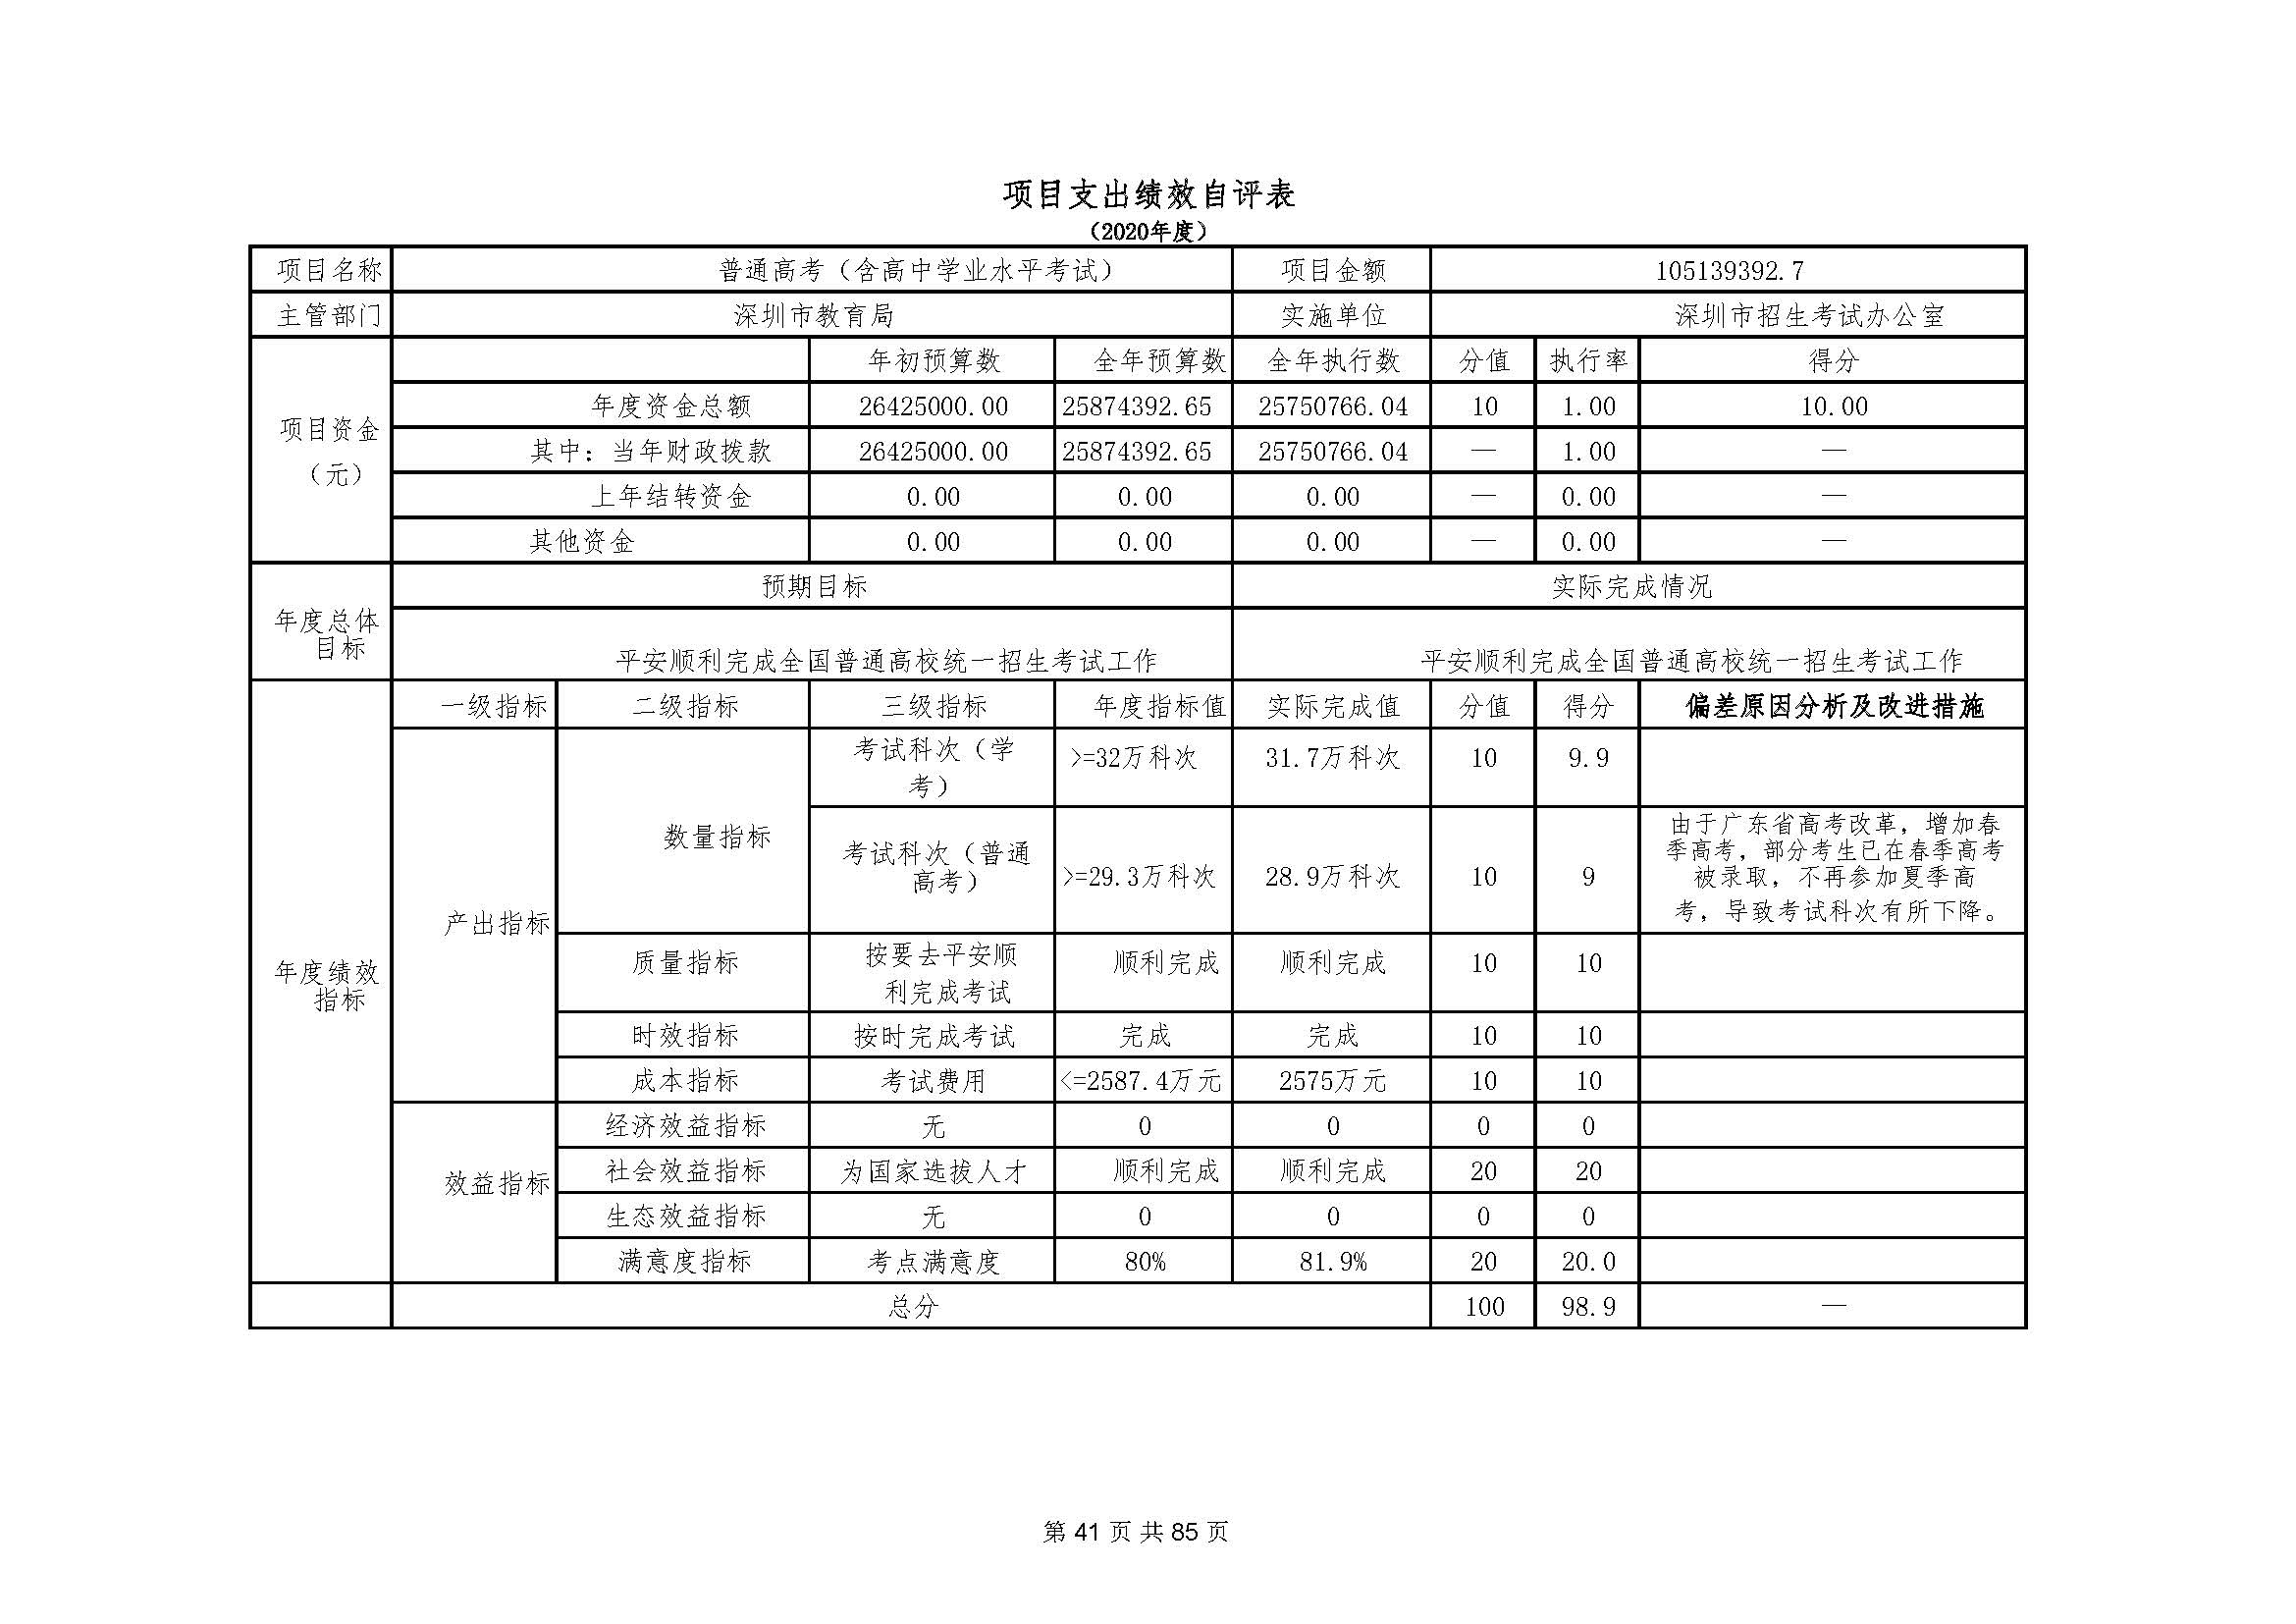 深圳市招生考试办公室2020年度部门决算_页面_42.jpg